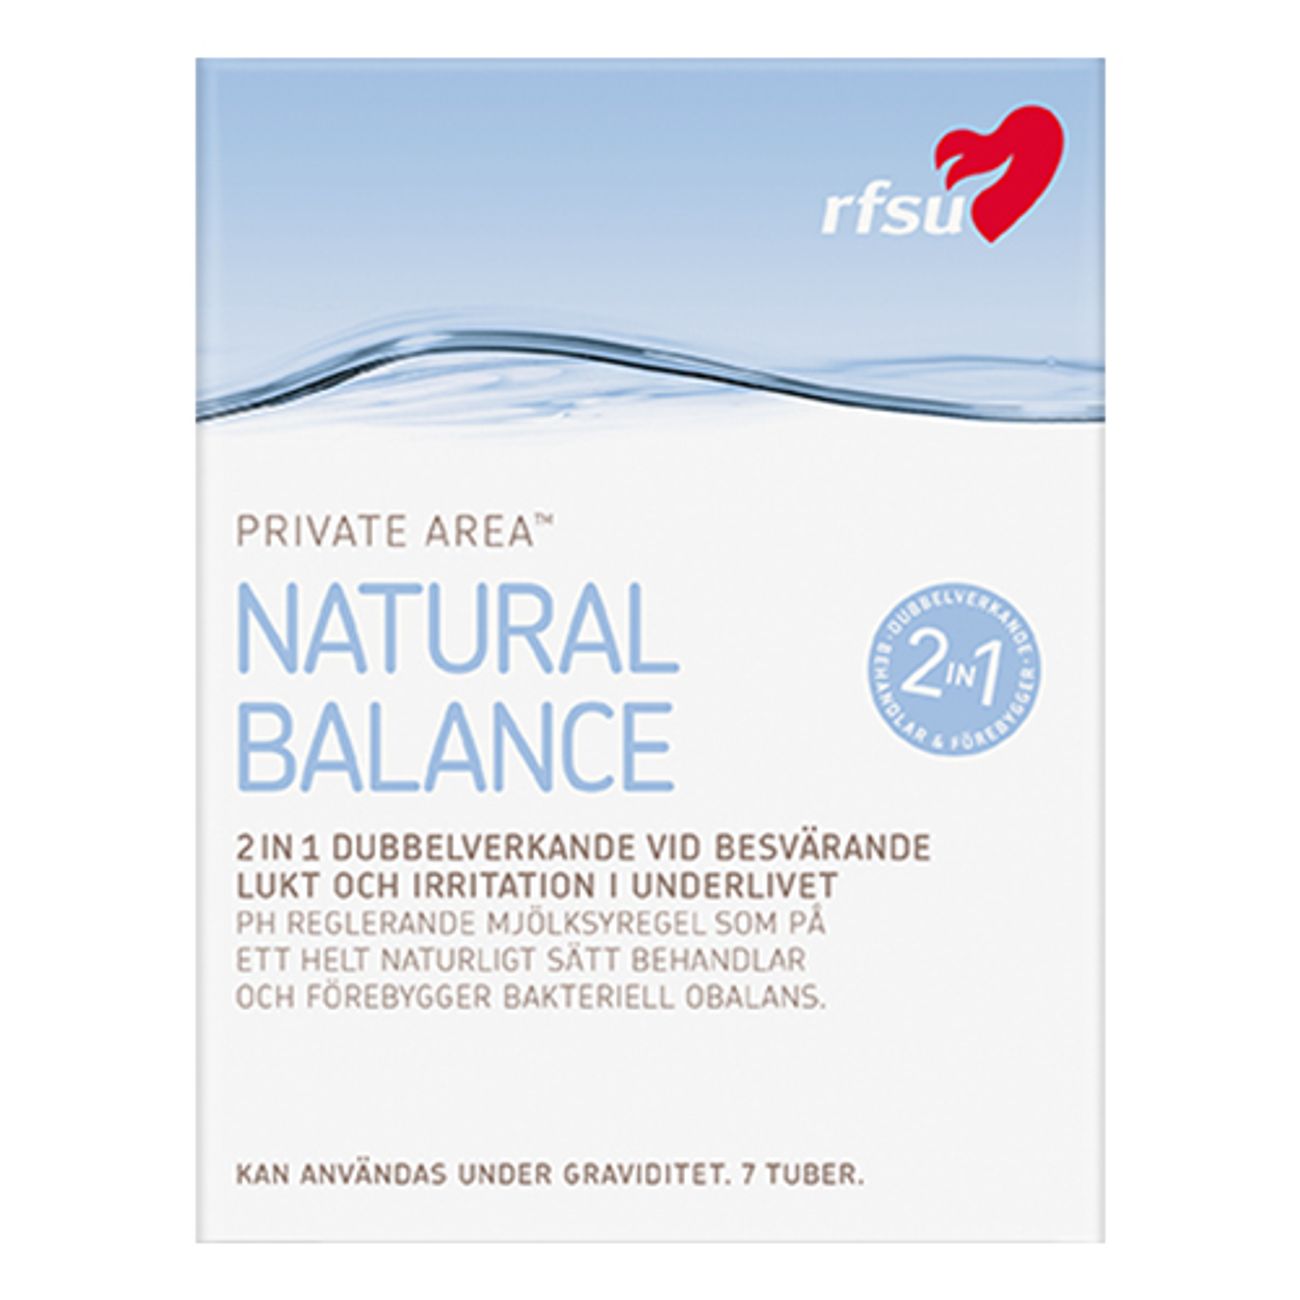 rfsu-natural-balance-1